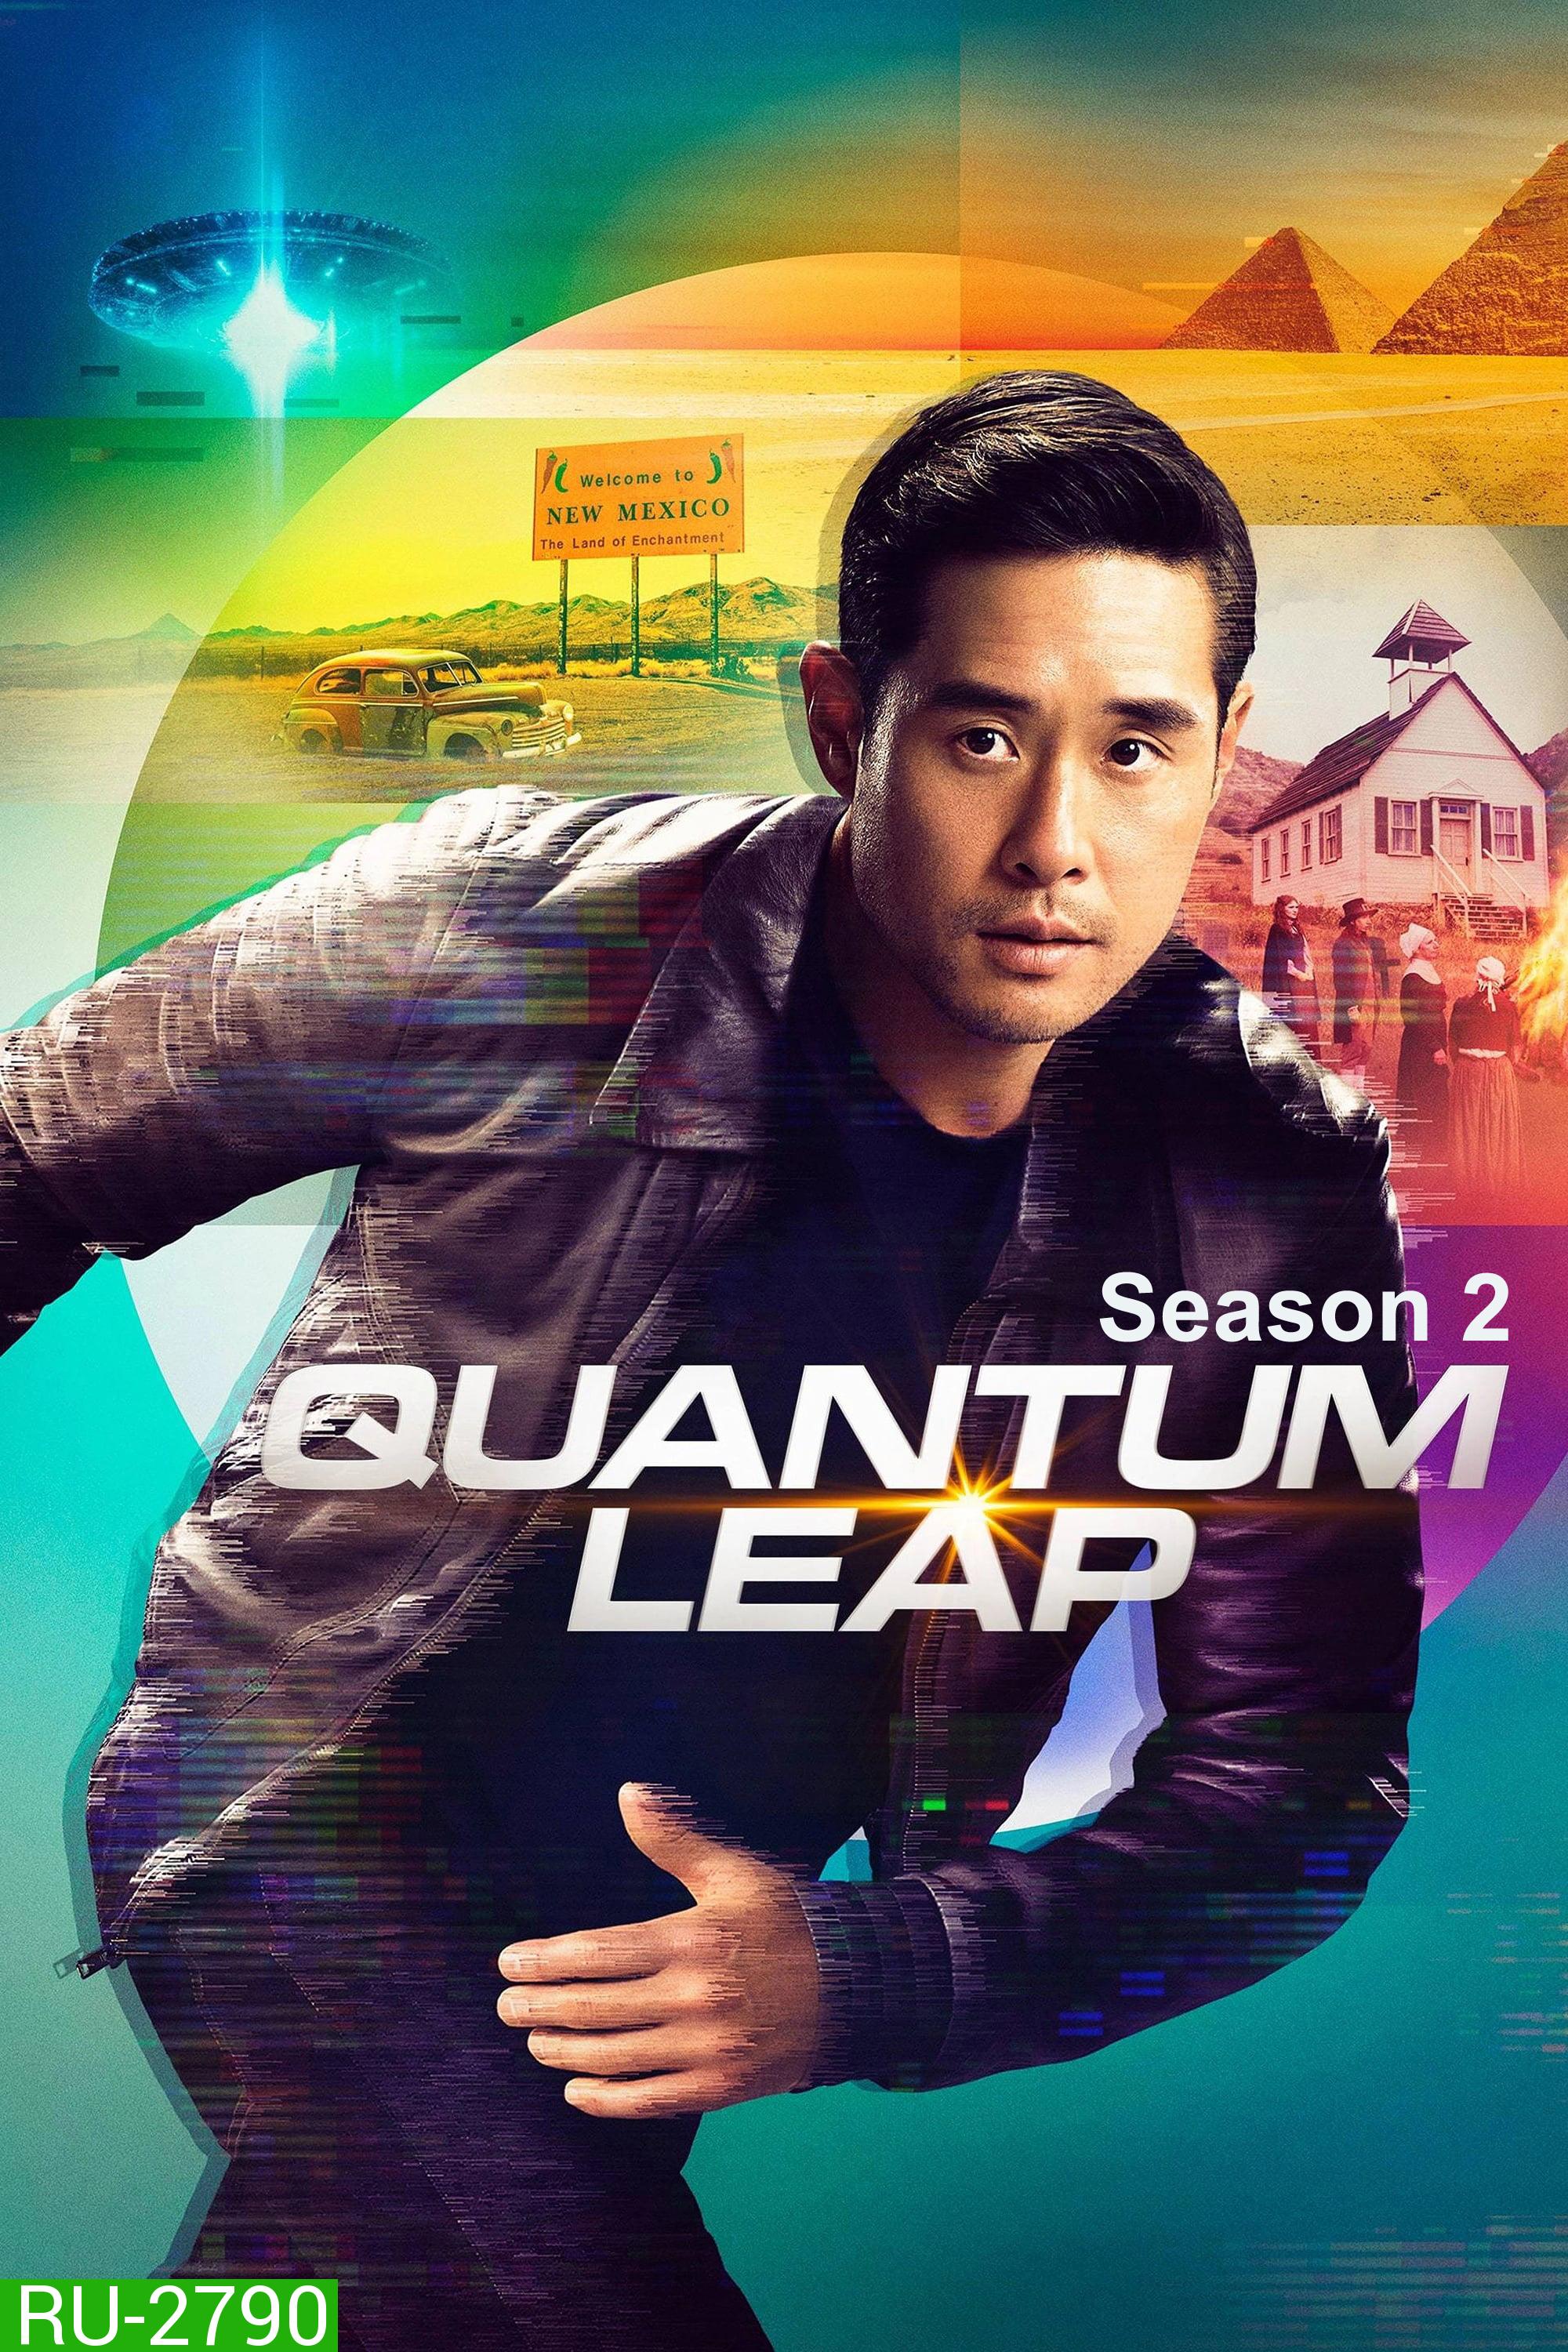 Quantum Leap Season 2 (2023) ควอนตัมลีป กระโดดข้ามเวลา ปี 2 (8 ตอน)